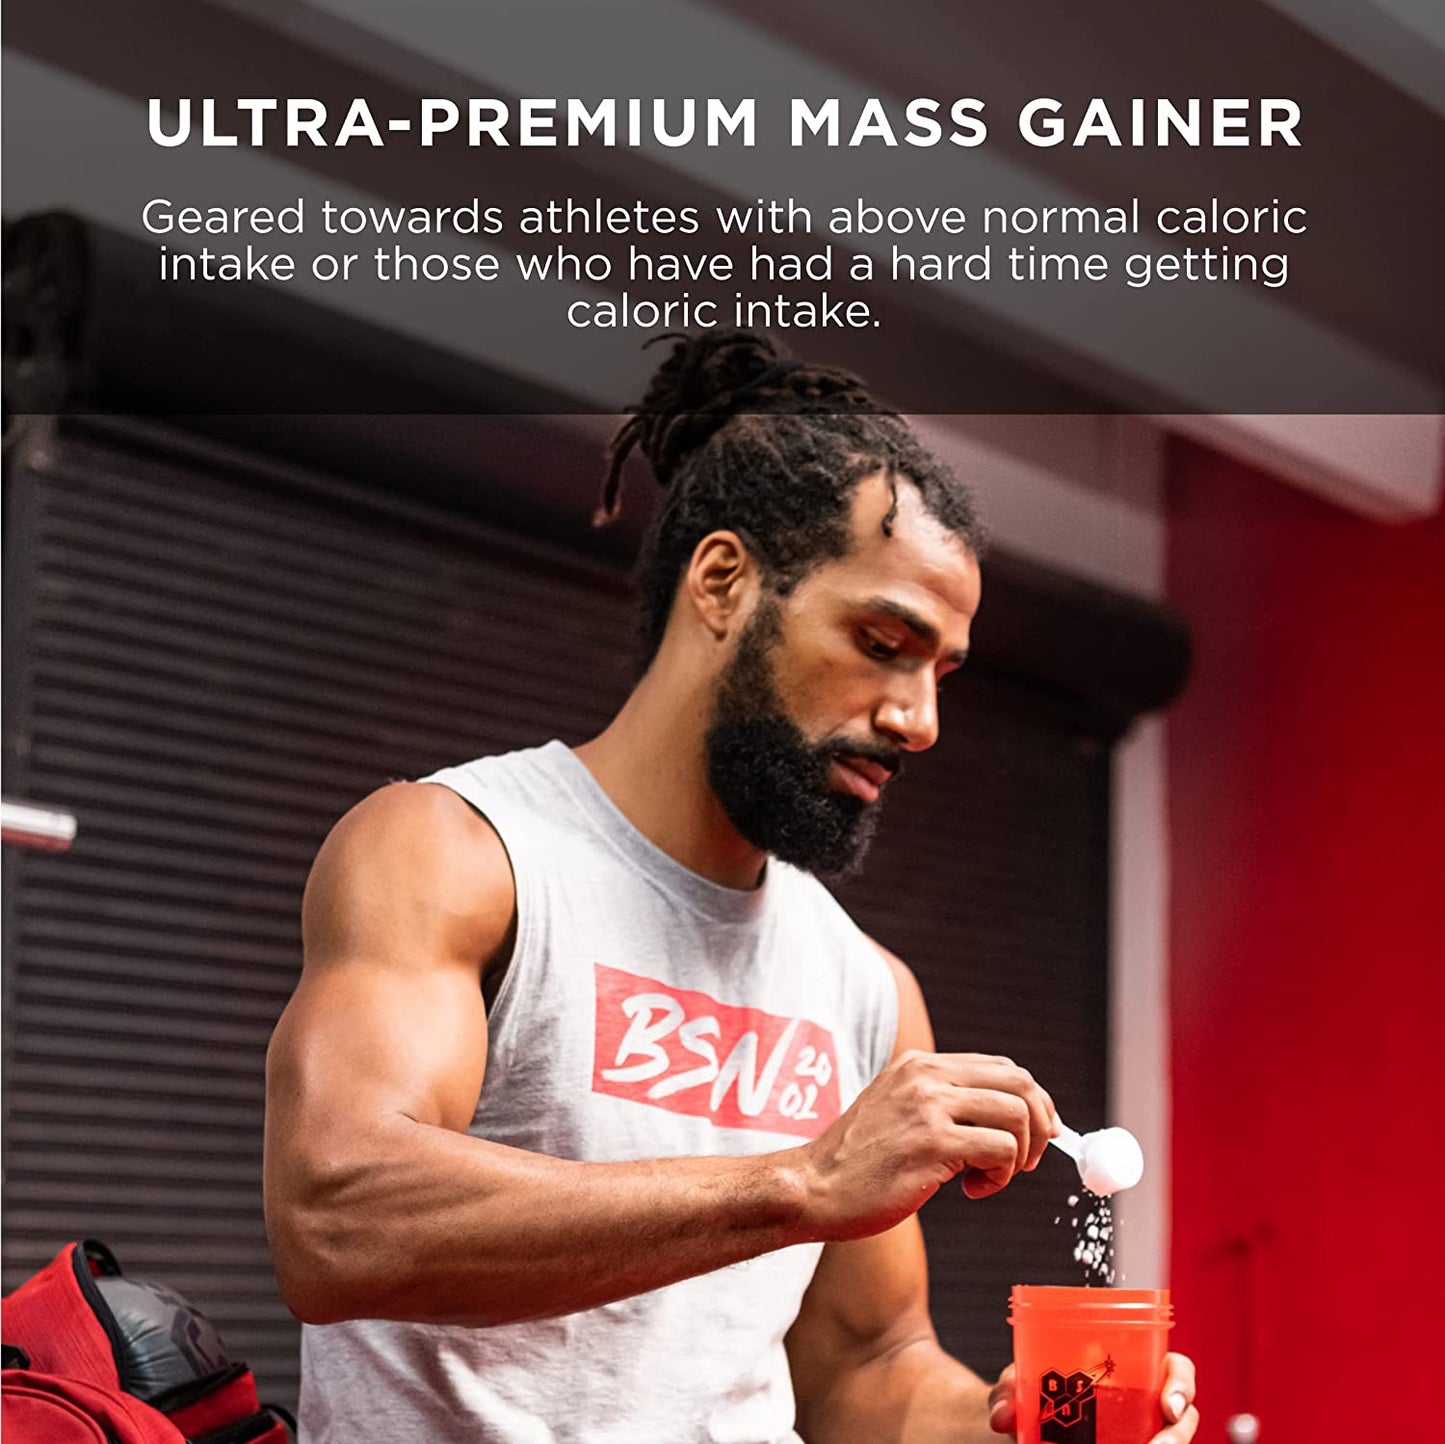 TRUE-MASS Weight Gainer, Muscle Mass Gainer Protein Powder, Strawberry Milkshake, 10.25 Pound